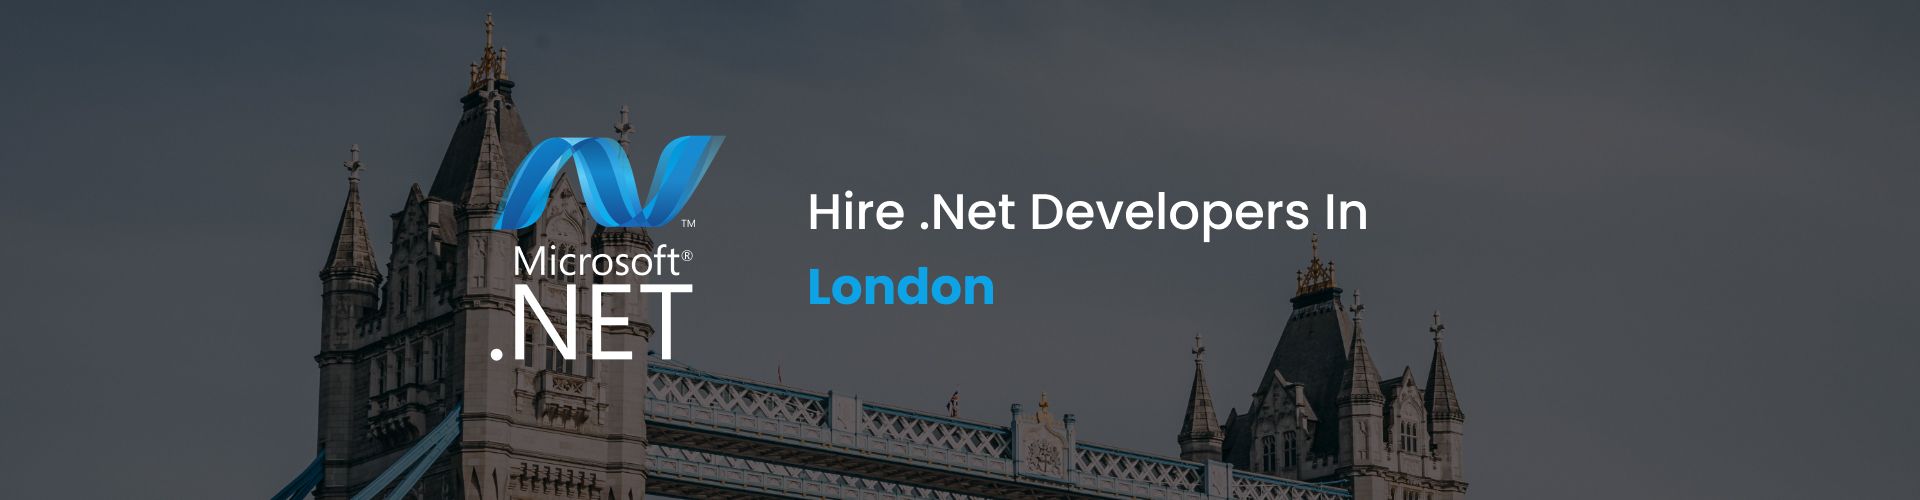 hire dot net developers in london